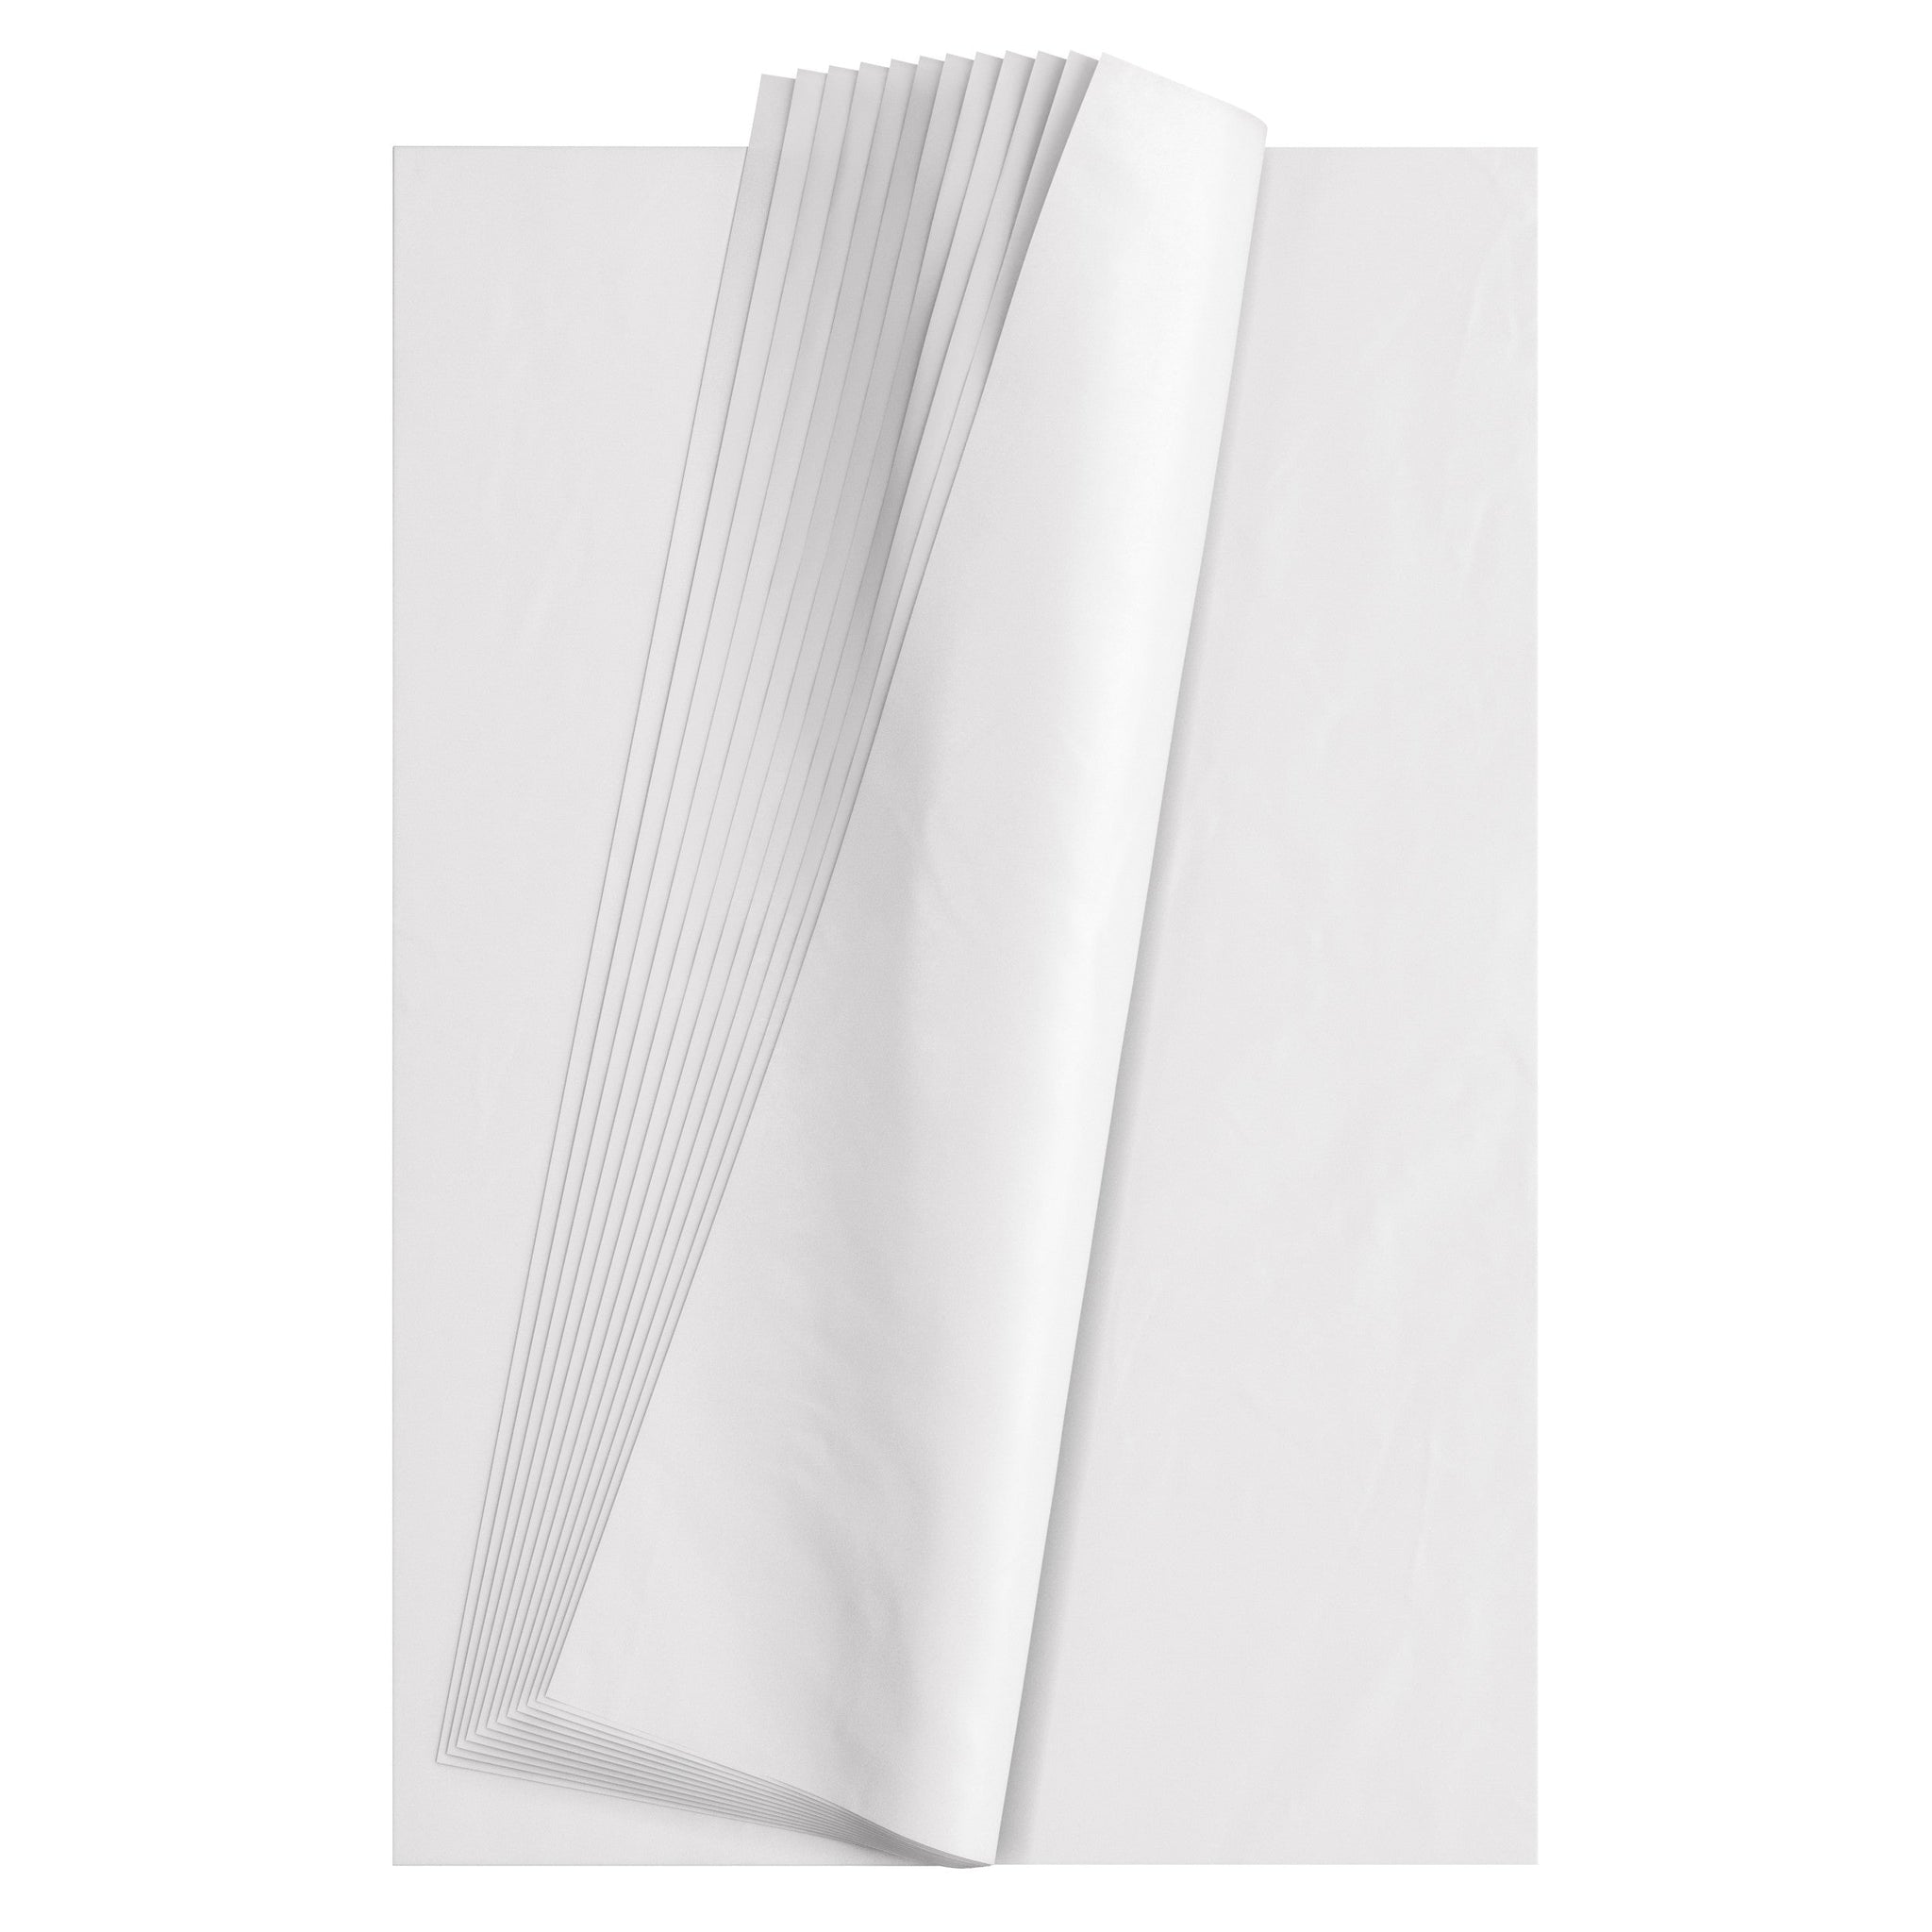 25pk White Tissue Paper Sheets for Packaging 75 x 50cm, White